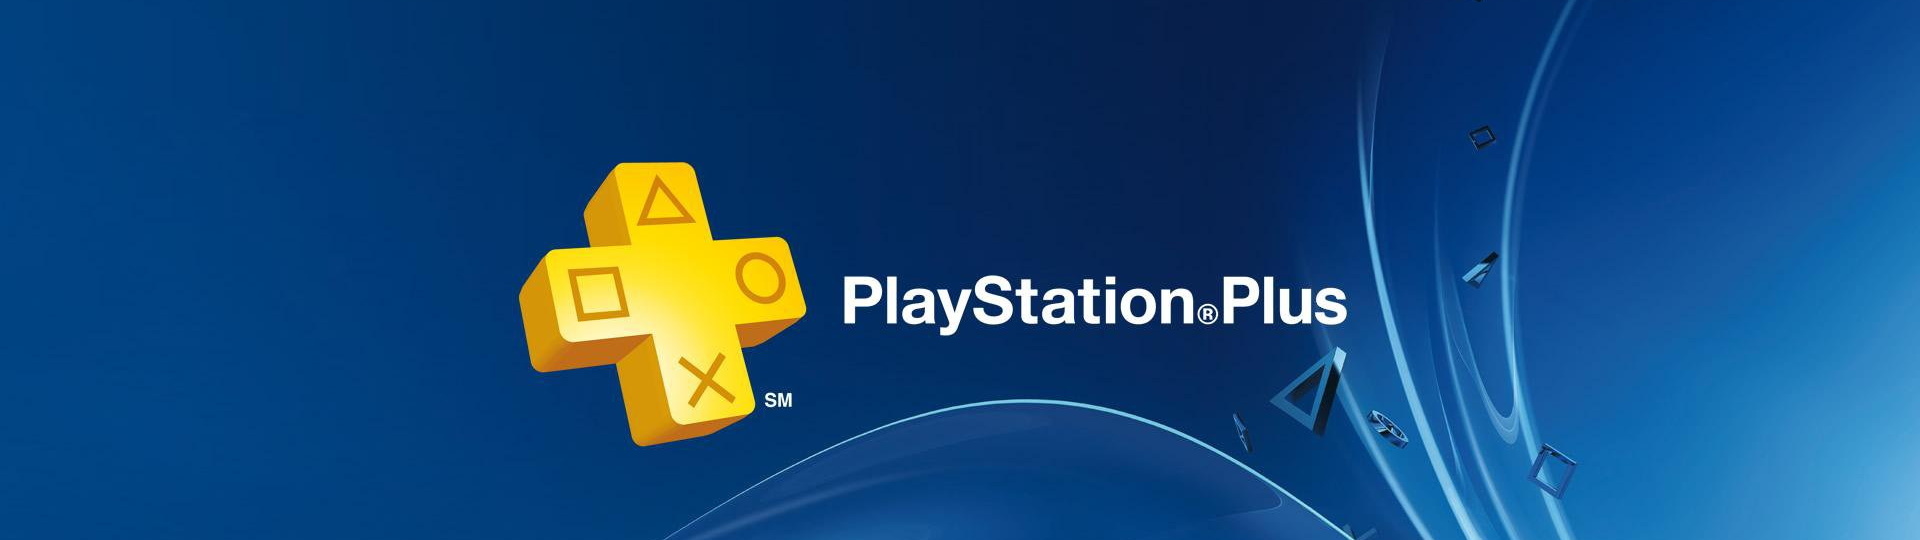 Sony začíná uvolňovat informace o novém PS Plus | Novinky